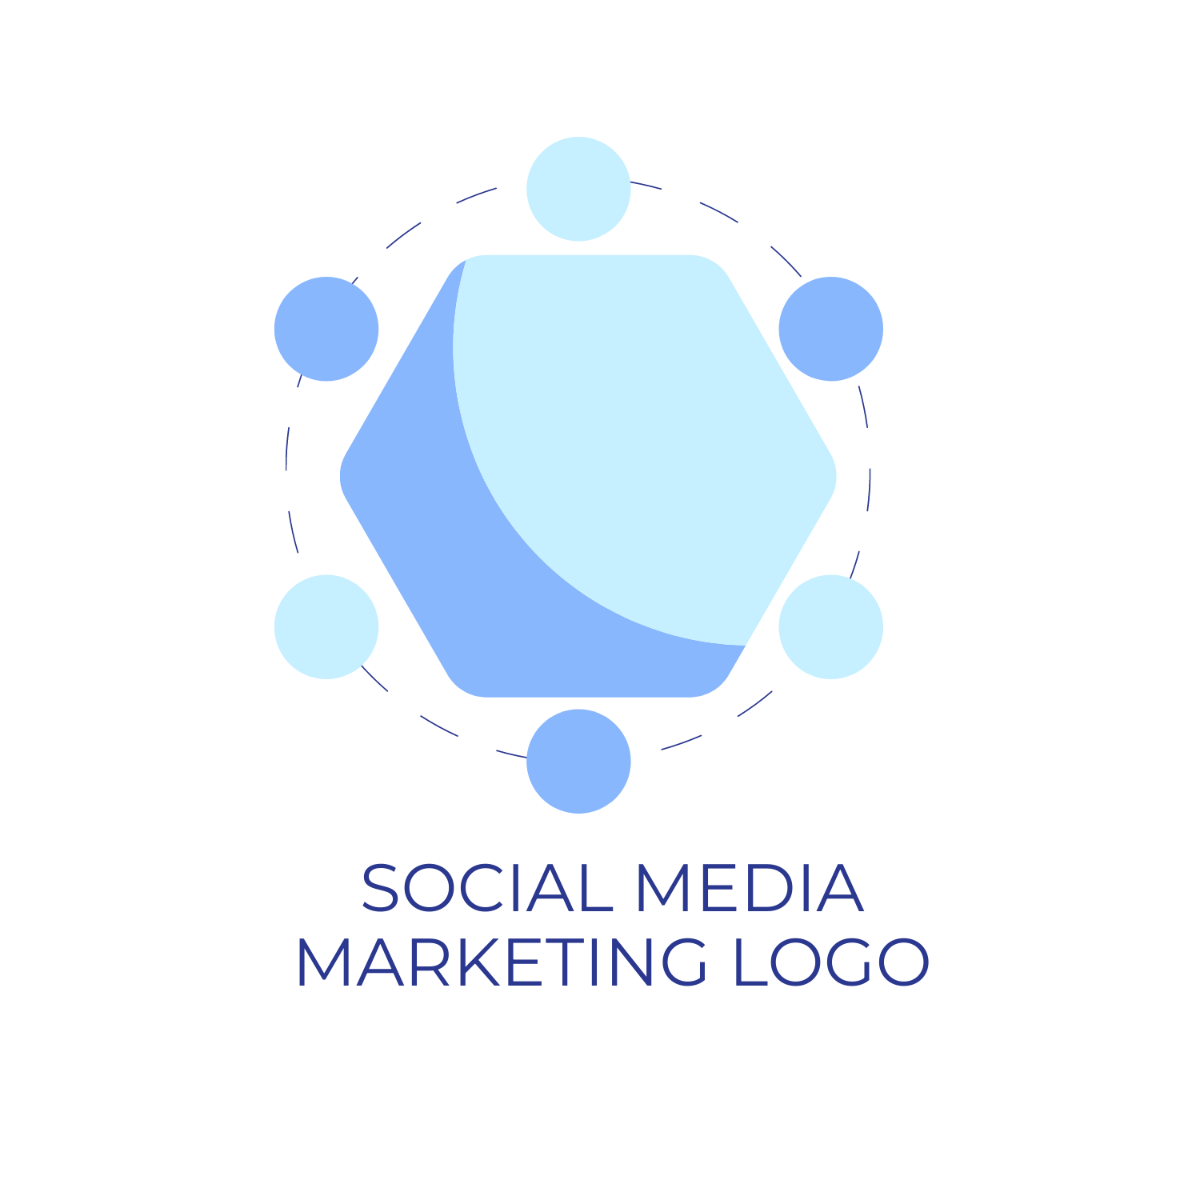 Social Media Marketing Logo Template